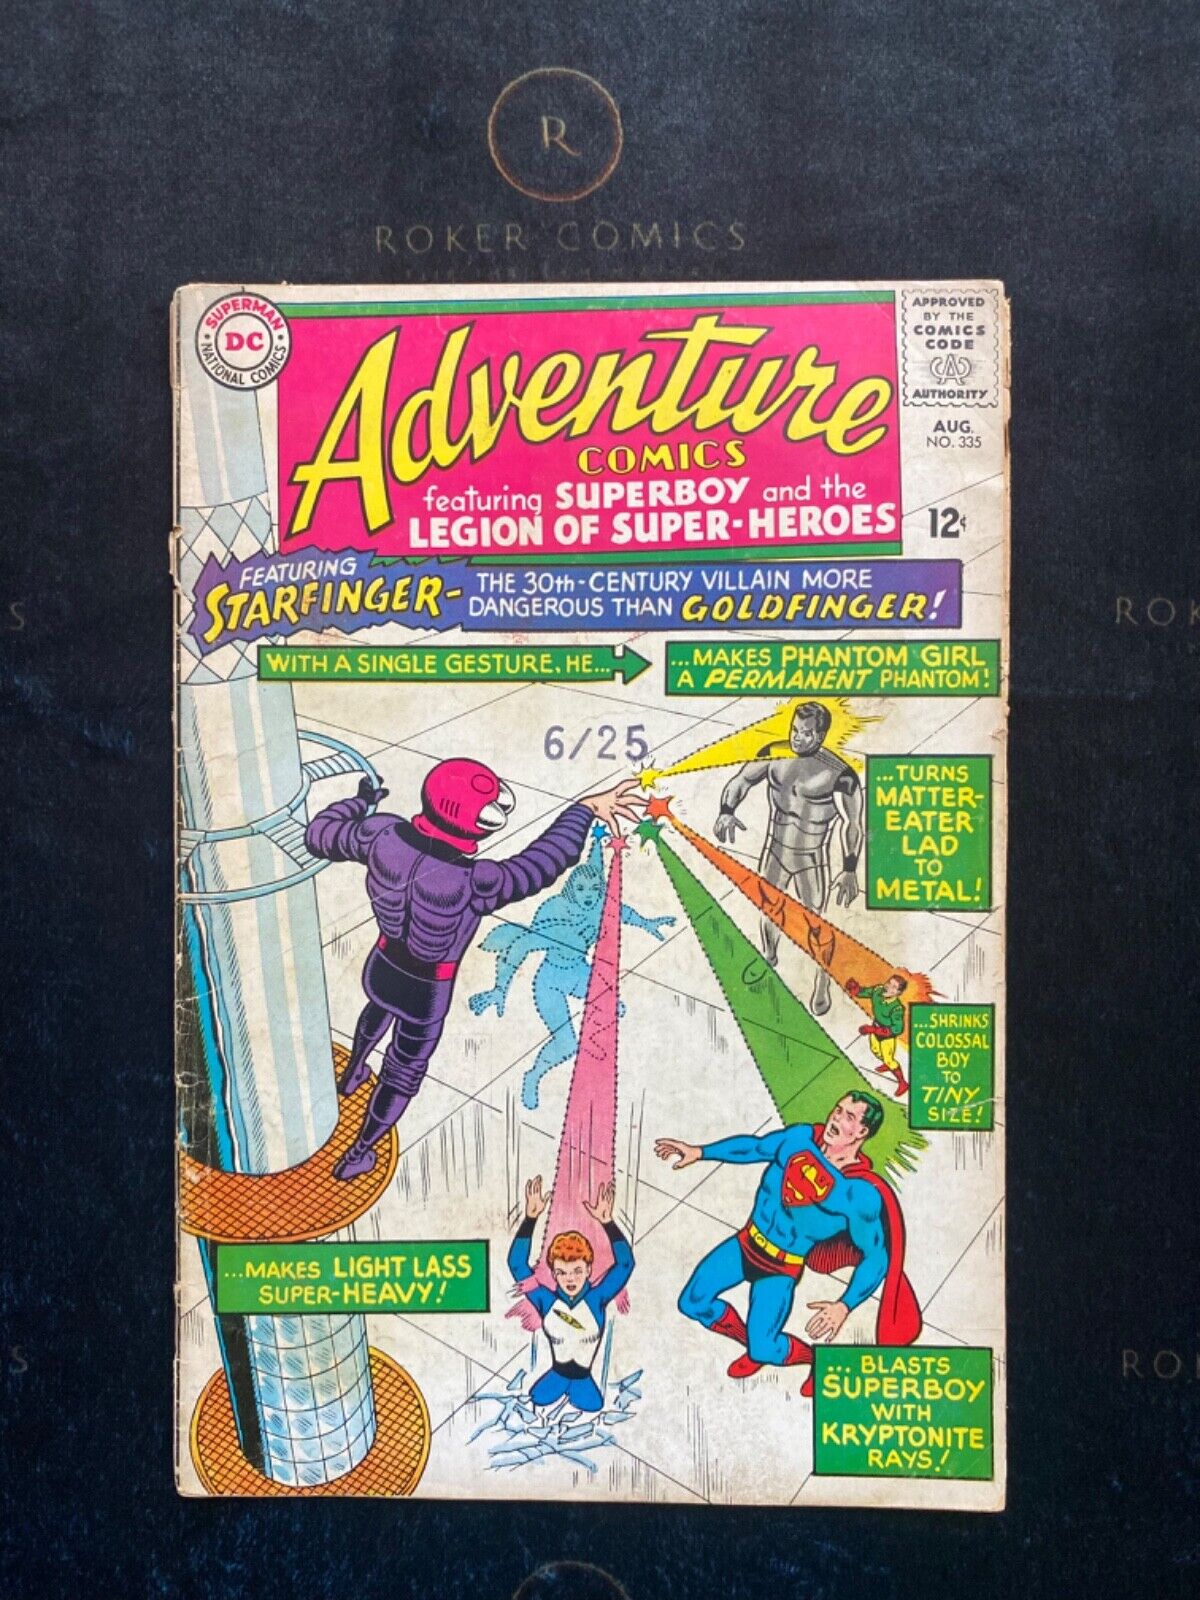 Very RARE 1965 Adventure Comic #335 (SILVER AGE)